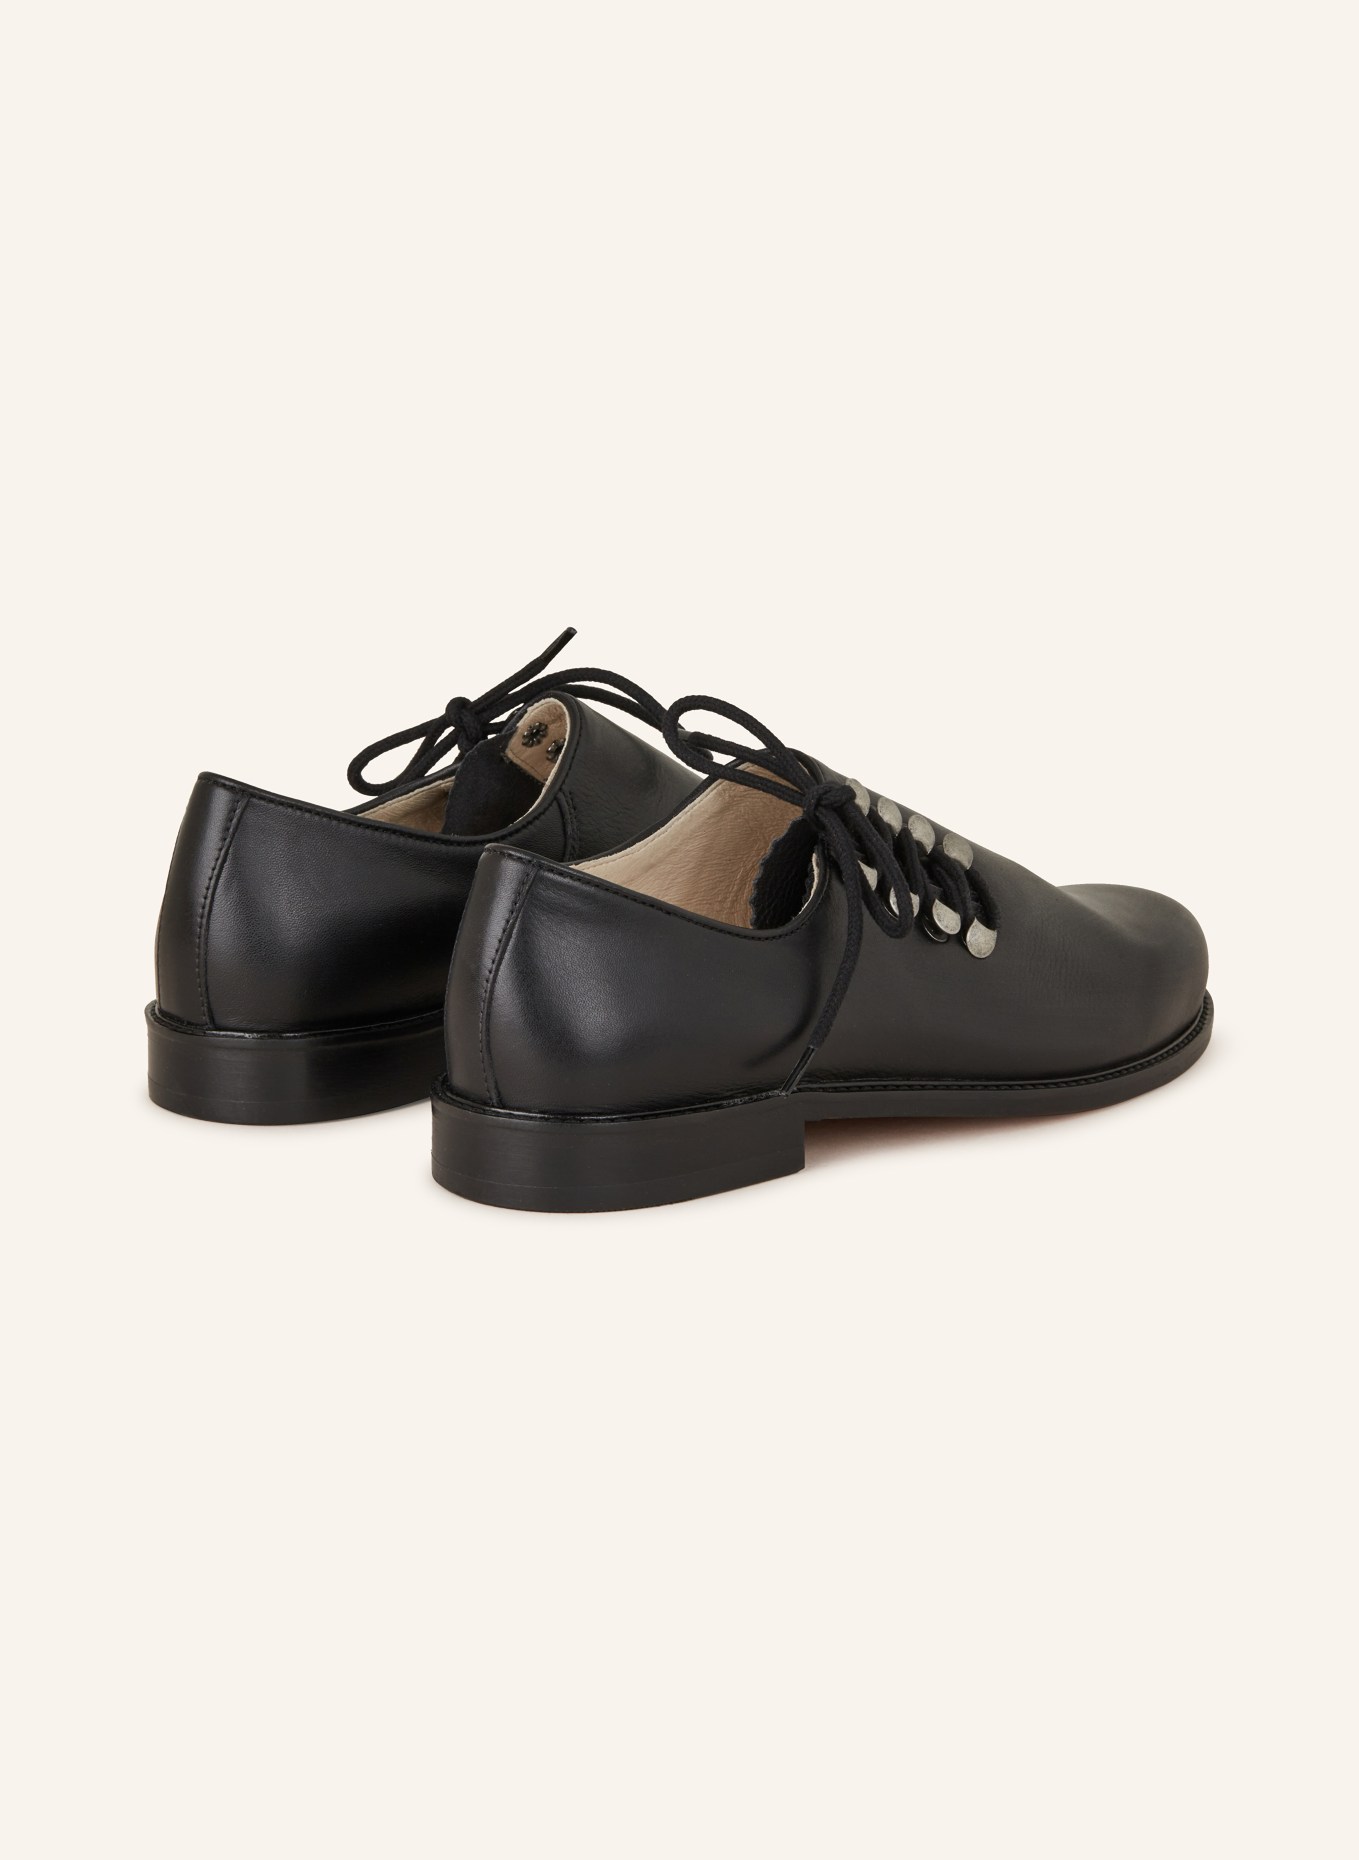 OSTARRICHI Trachten lace-up shoes, Color: BLACK (Image 2)